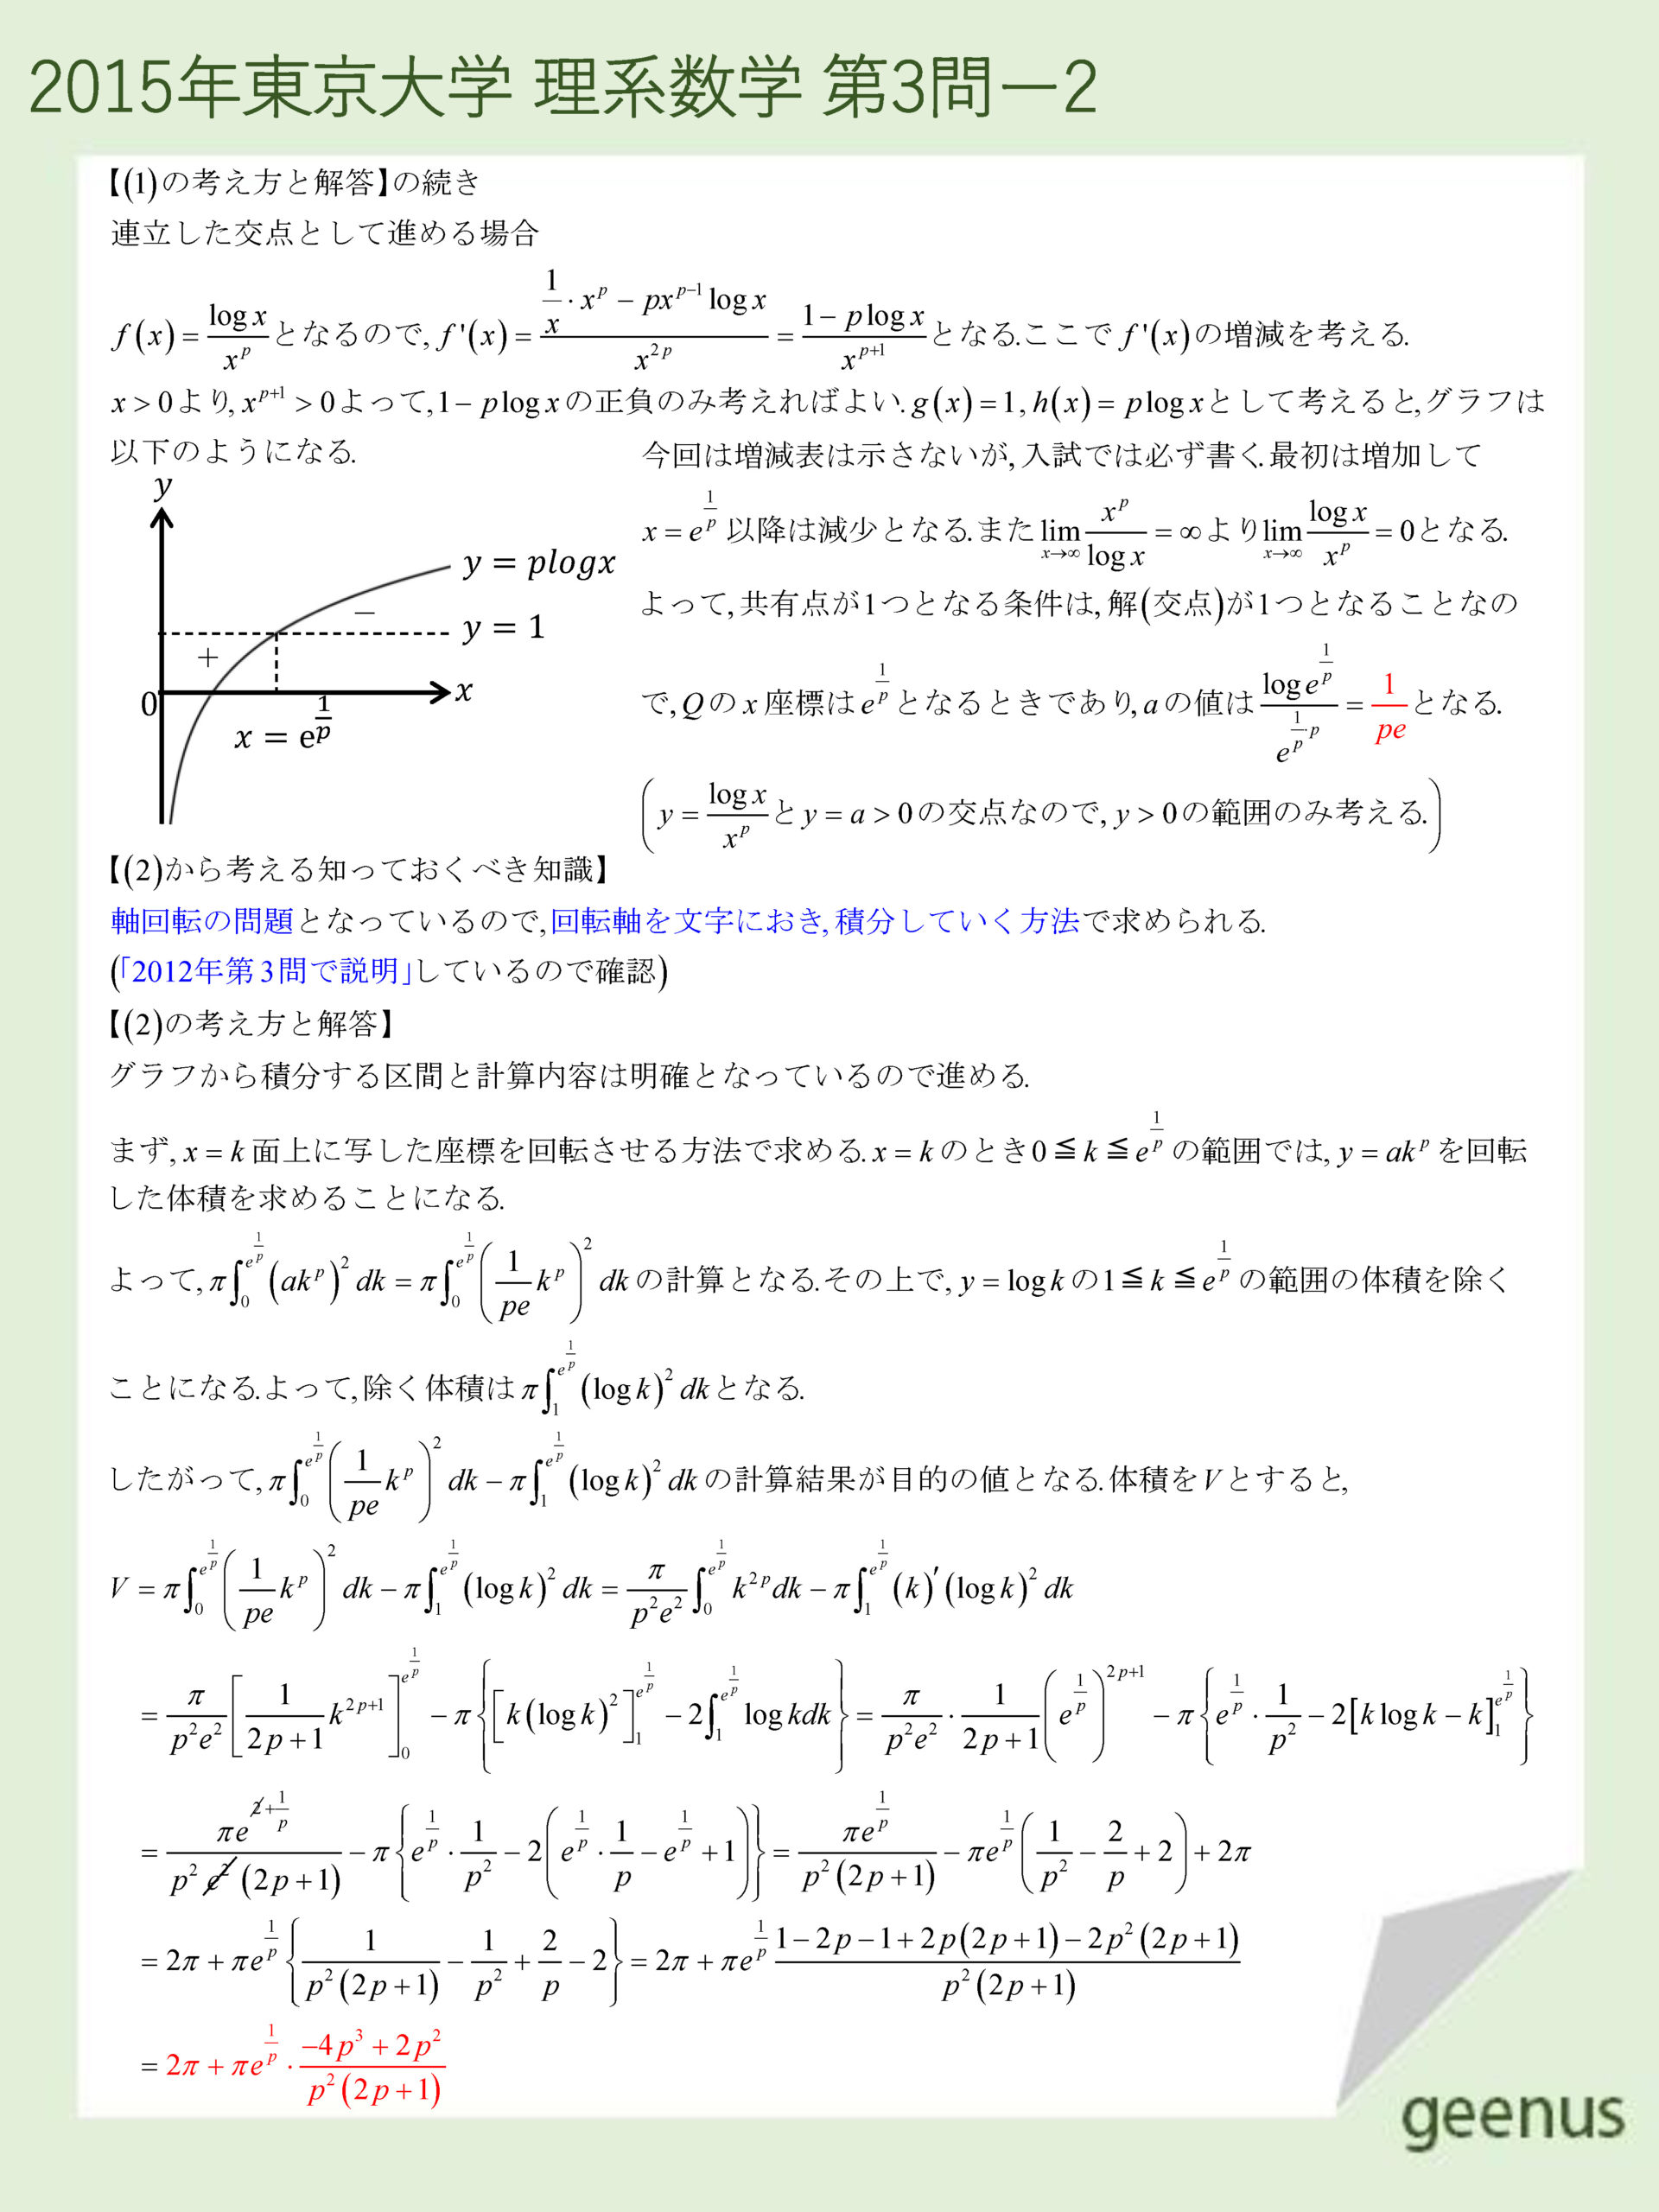 東大理系数学2015年第３問の解説2